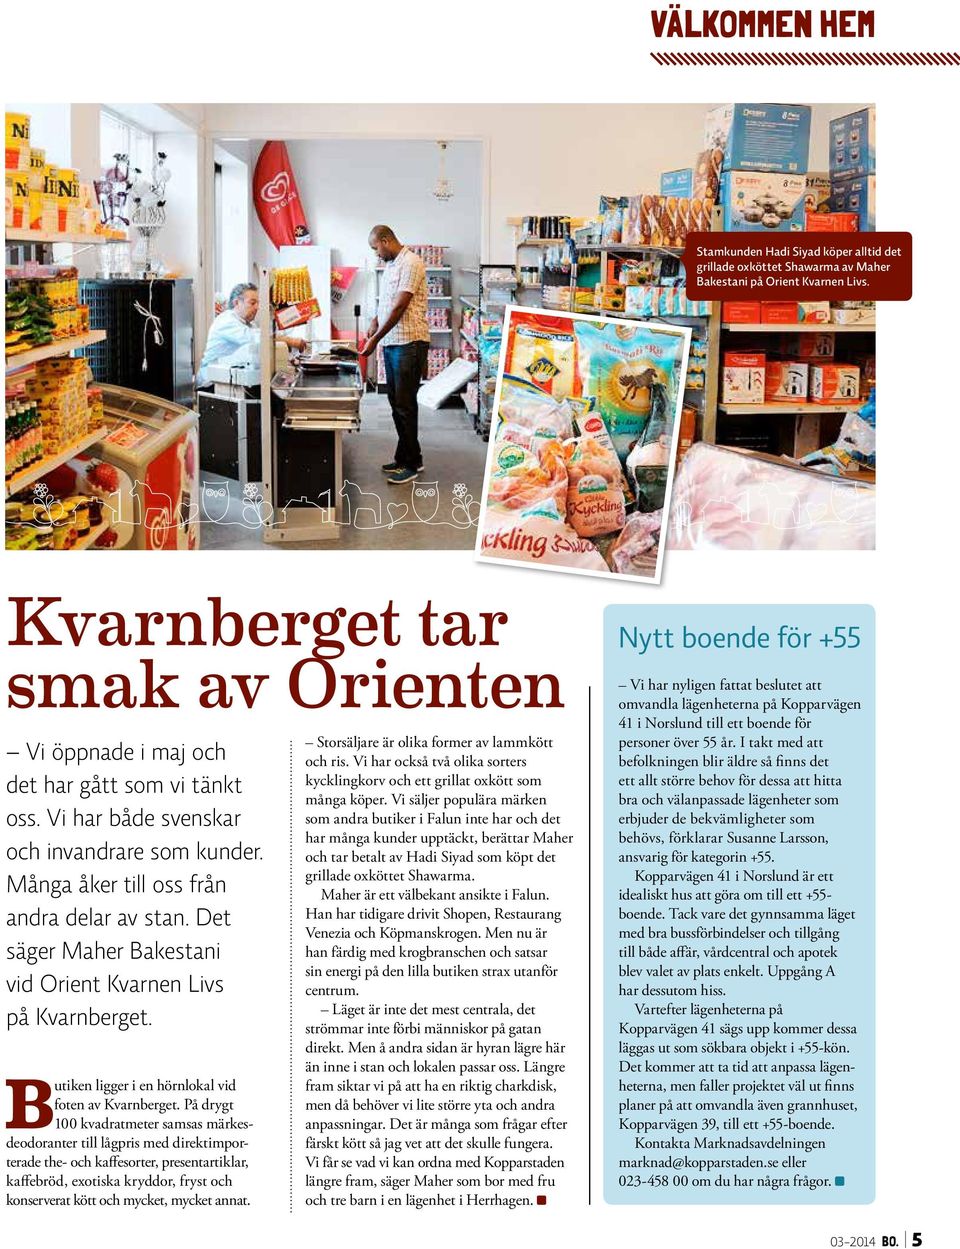 Det säger Maher Bakestani vid Orient Kvarnen Livs på Kvarnberget. Butiken ligger i en hörnlokal vid foten av Kvarnberget.